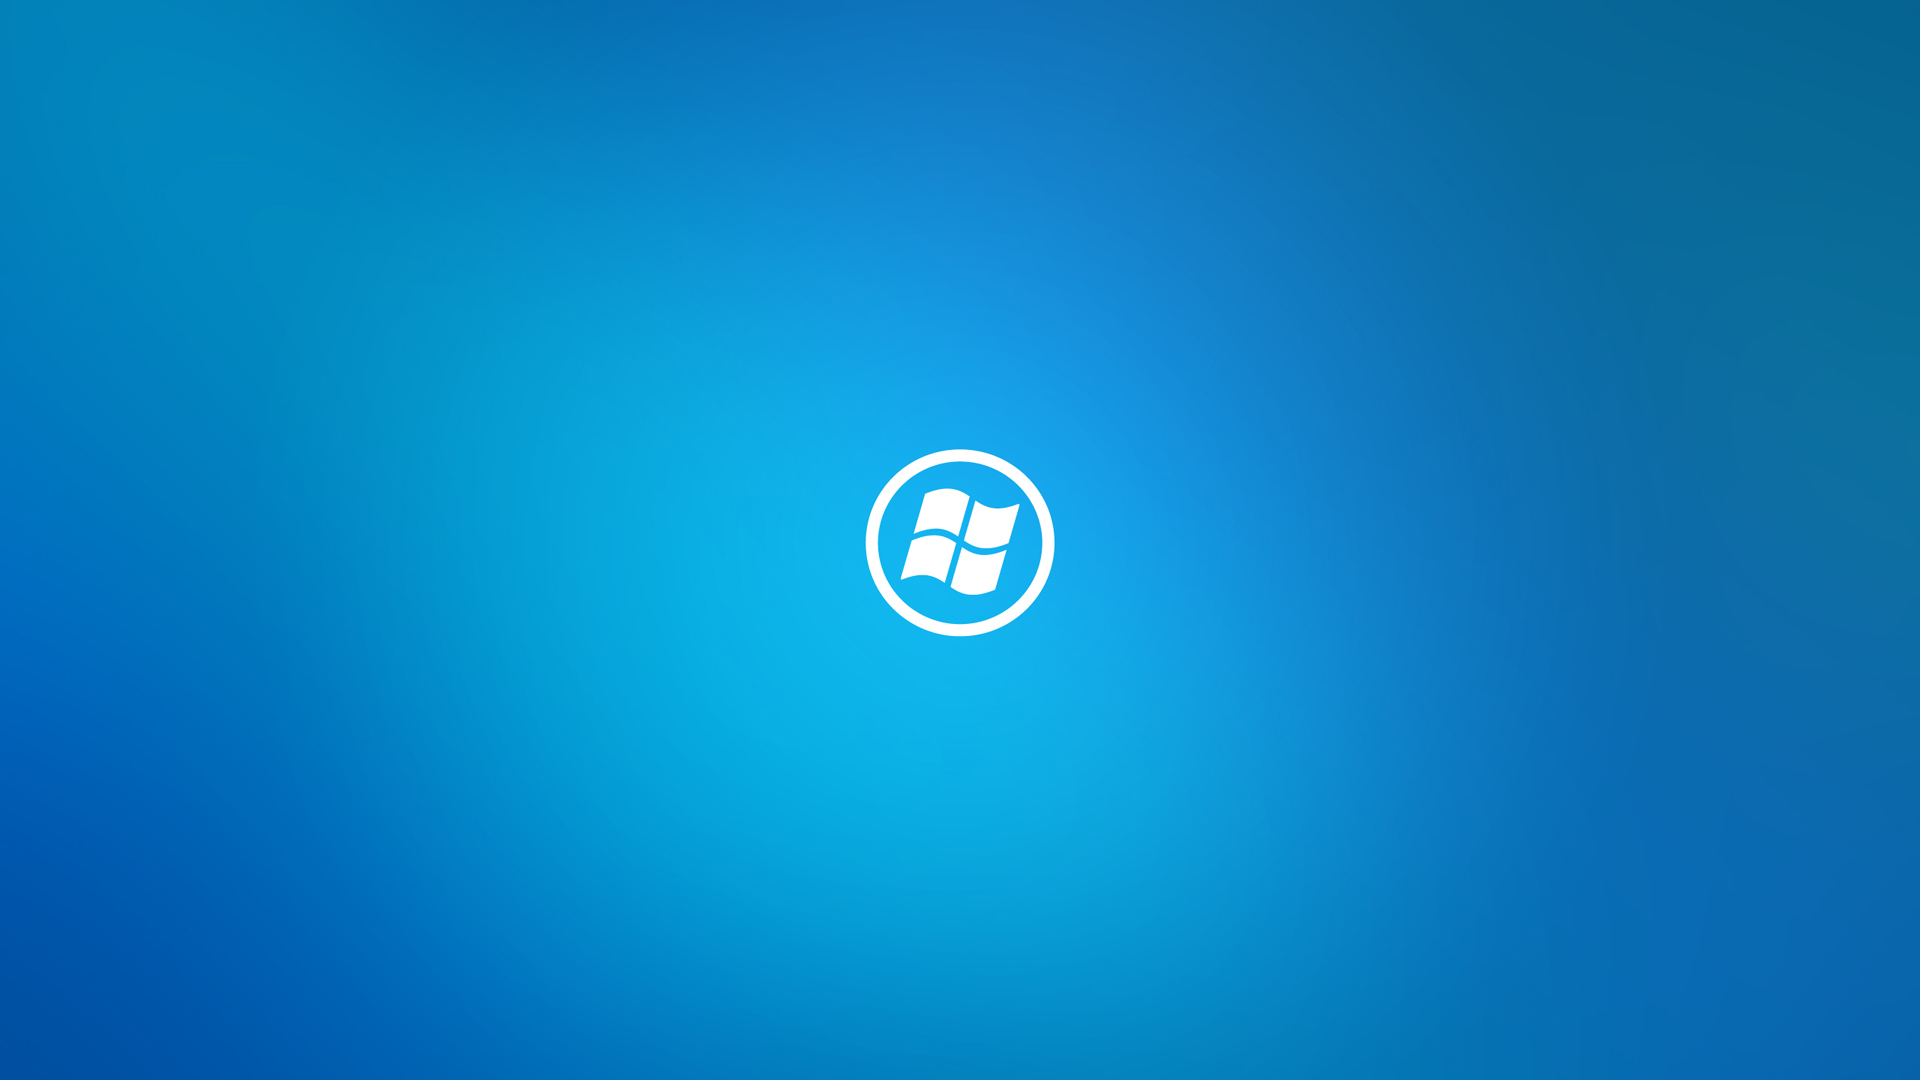 Windows 8 Wallpaper Blue wallpaper   804555 1920x1080